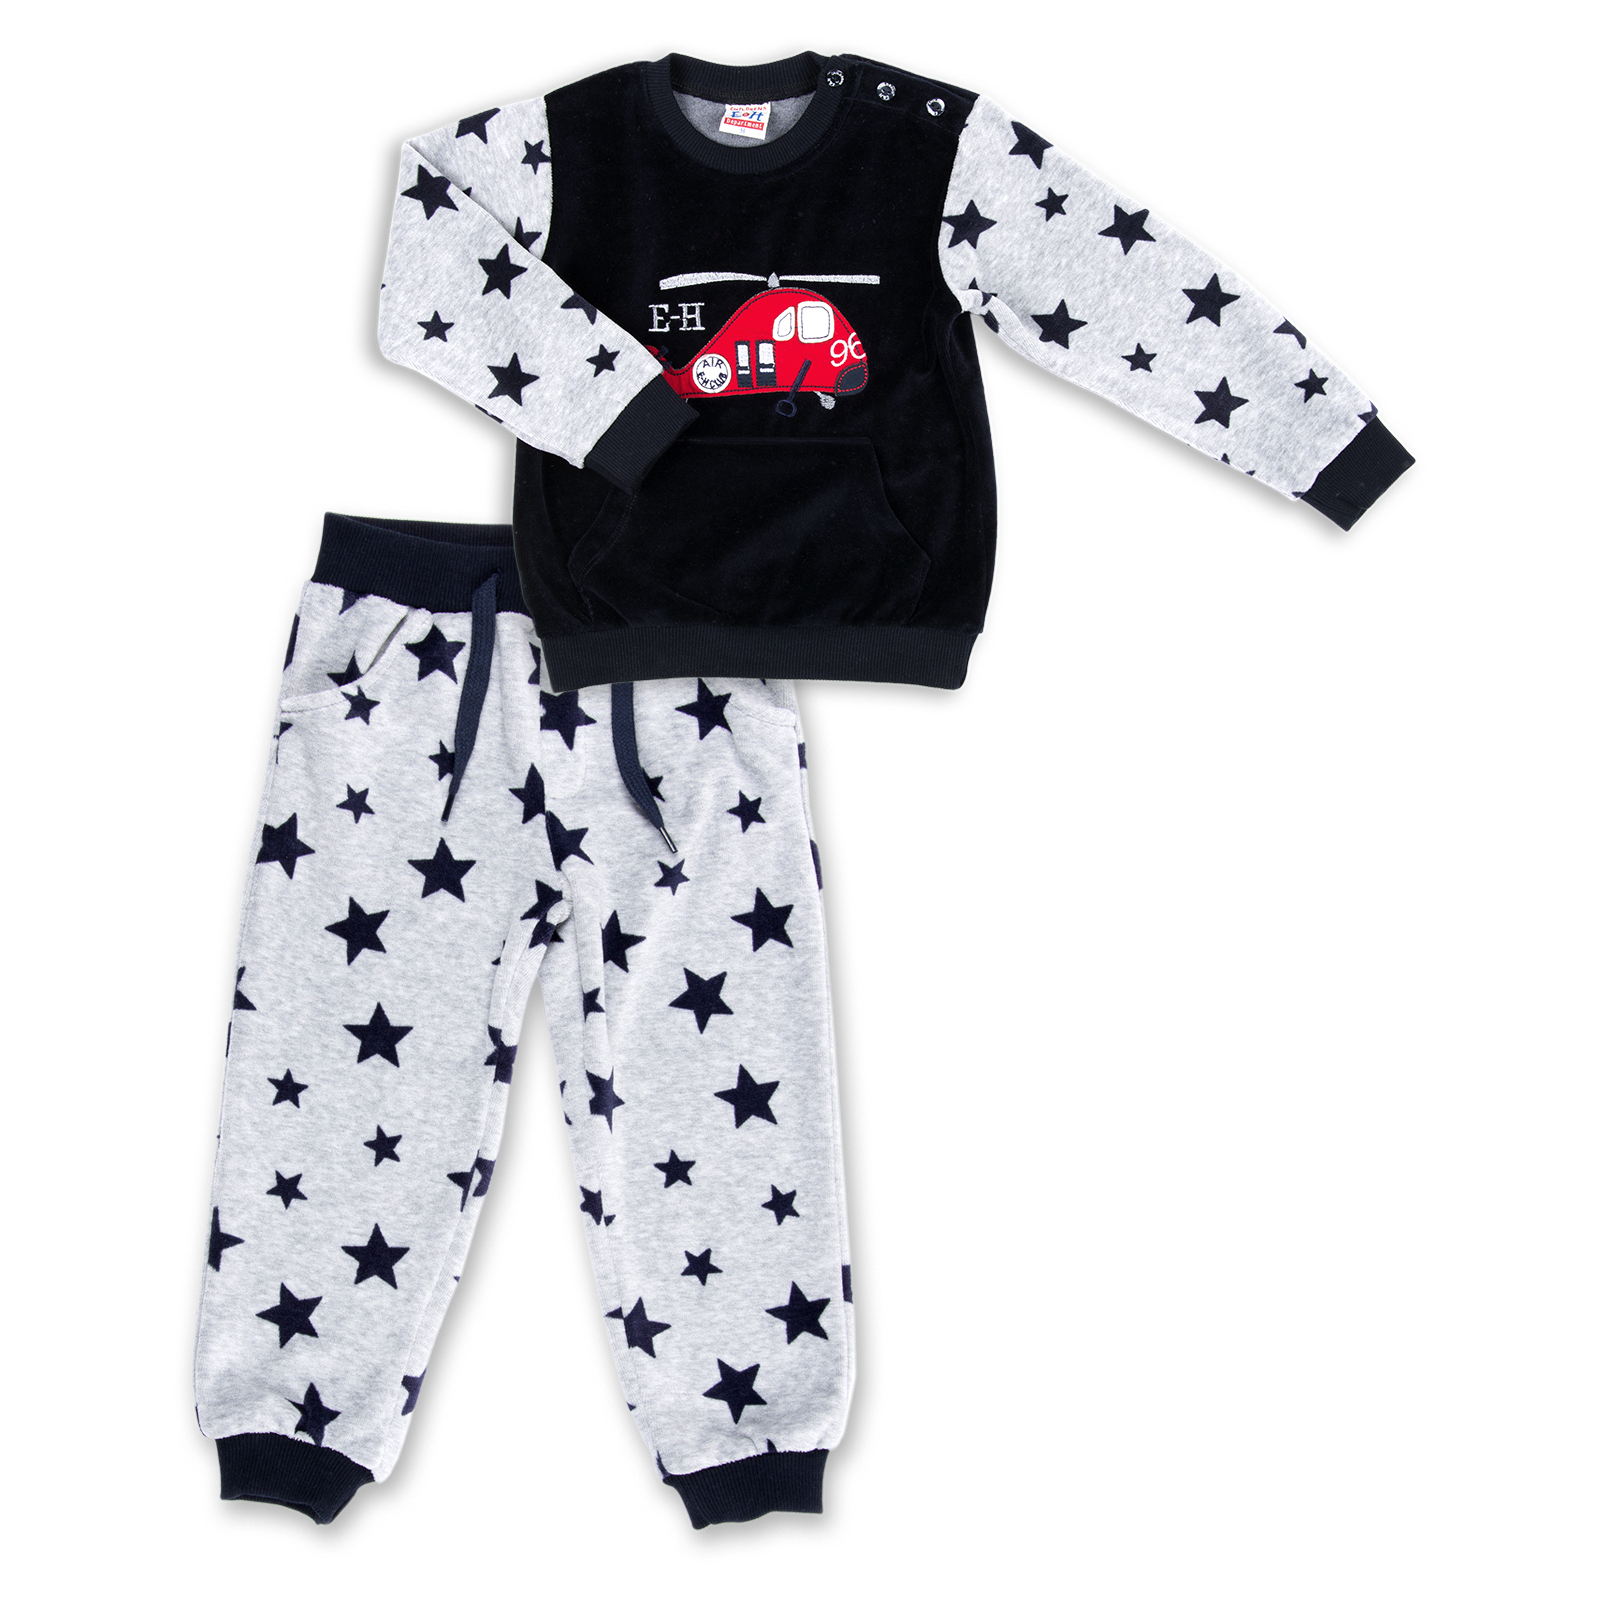 Набор детской одежды Breeze велюровый с вертолетом и штанишками в звездочку (8113-80/B-gray)